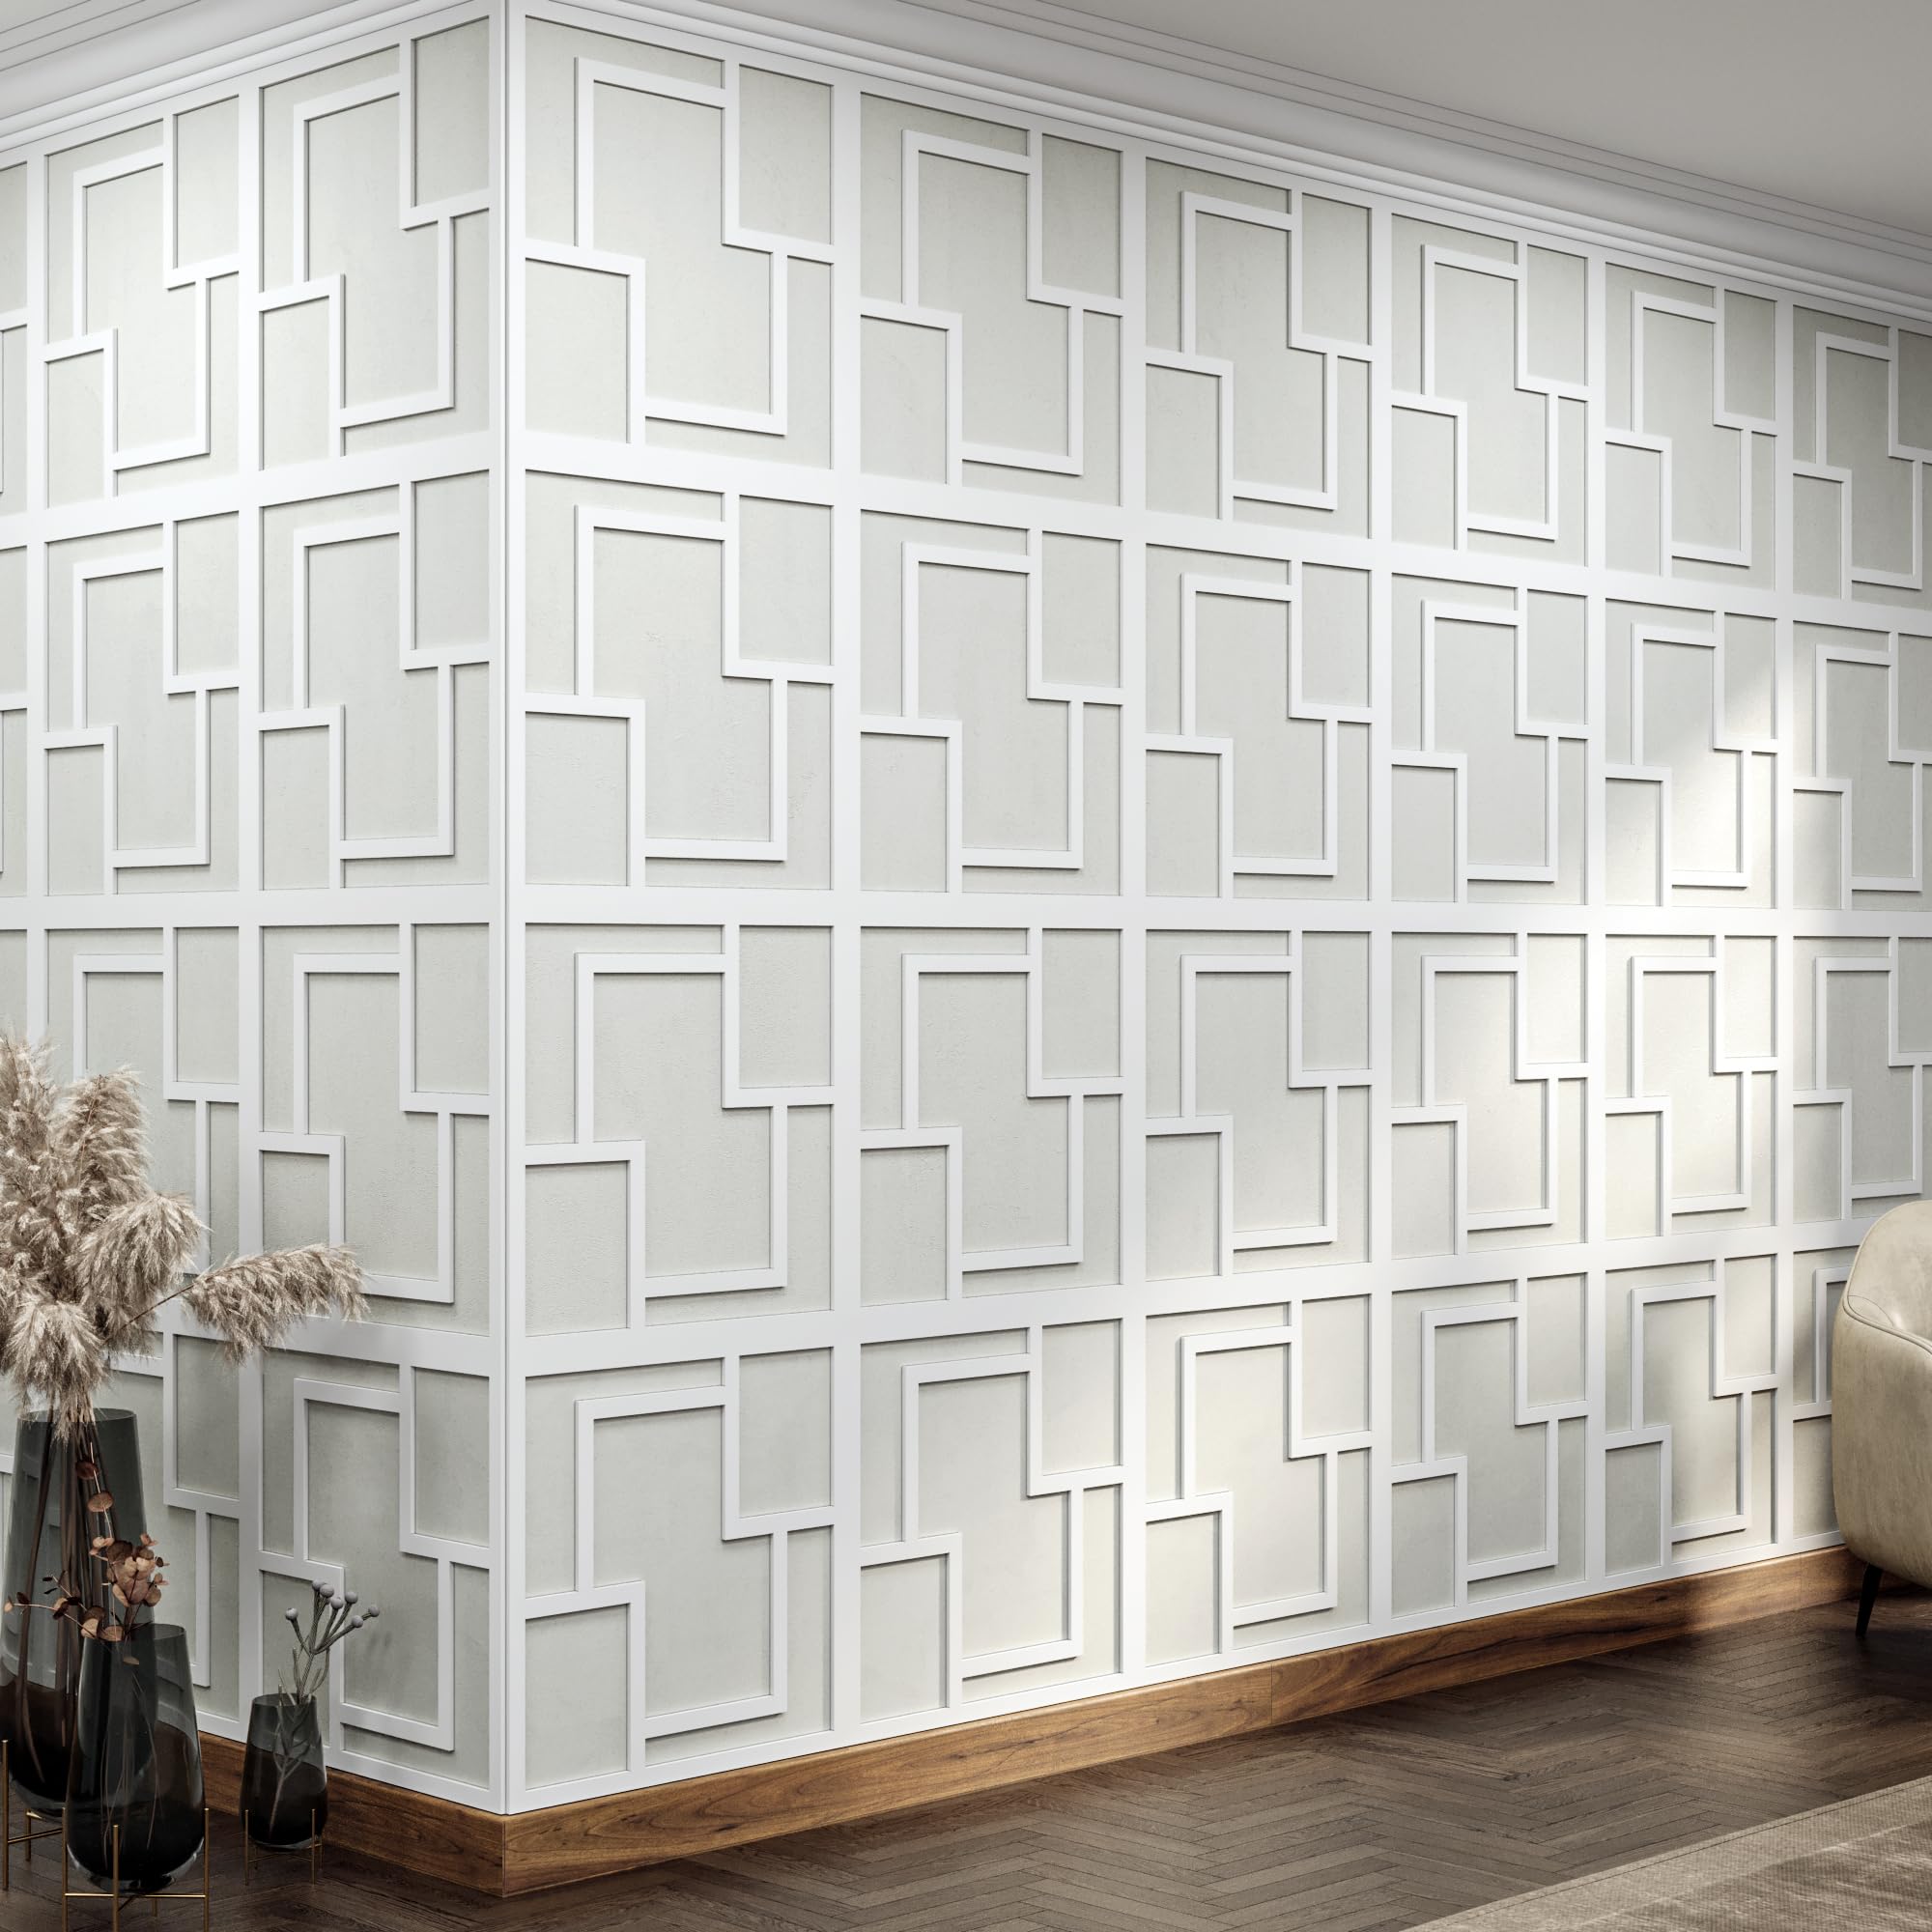 Stylish Wall Panels